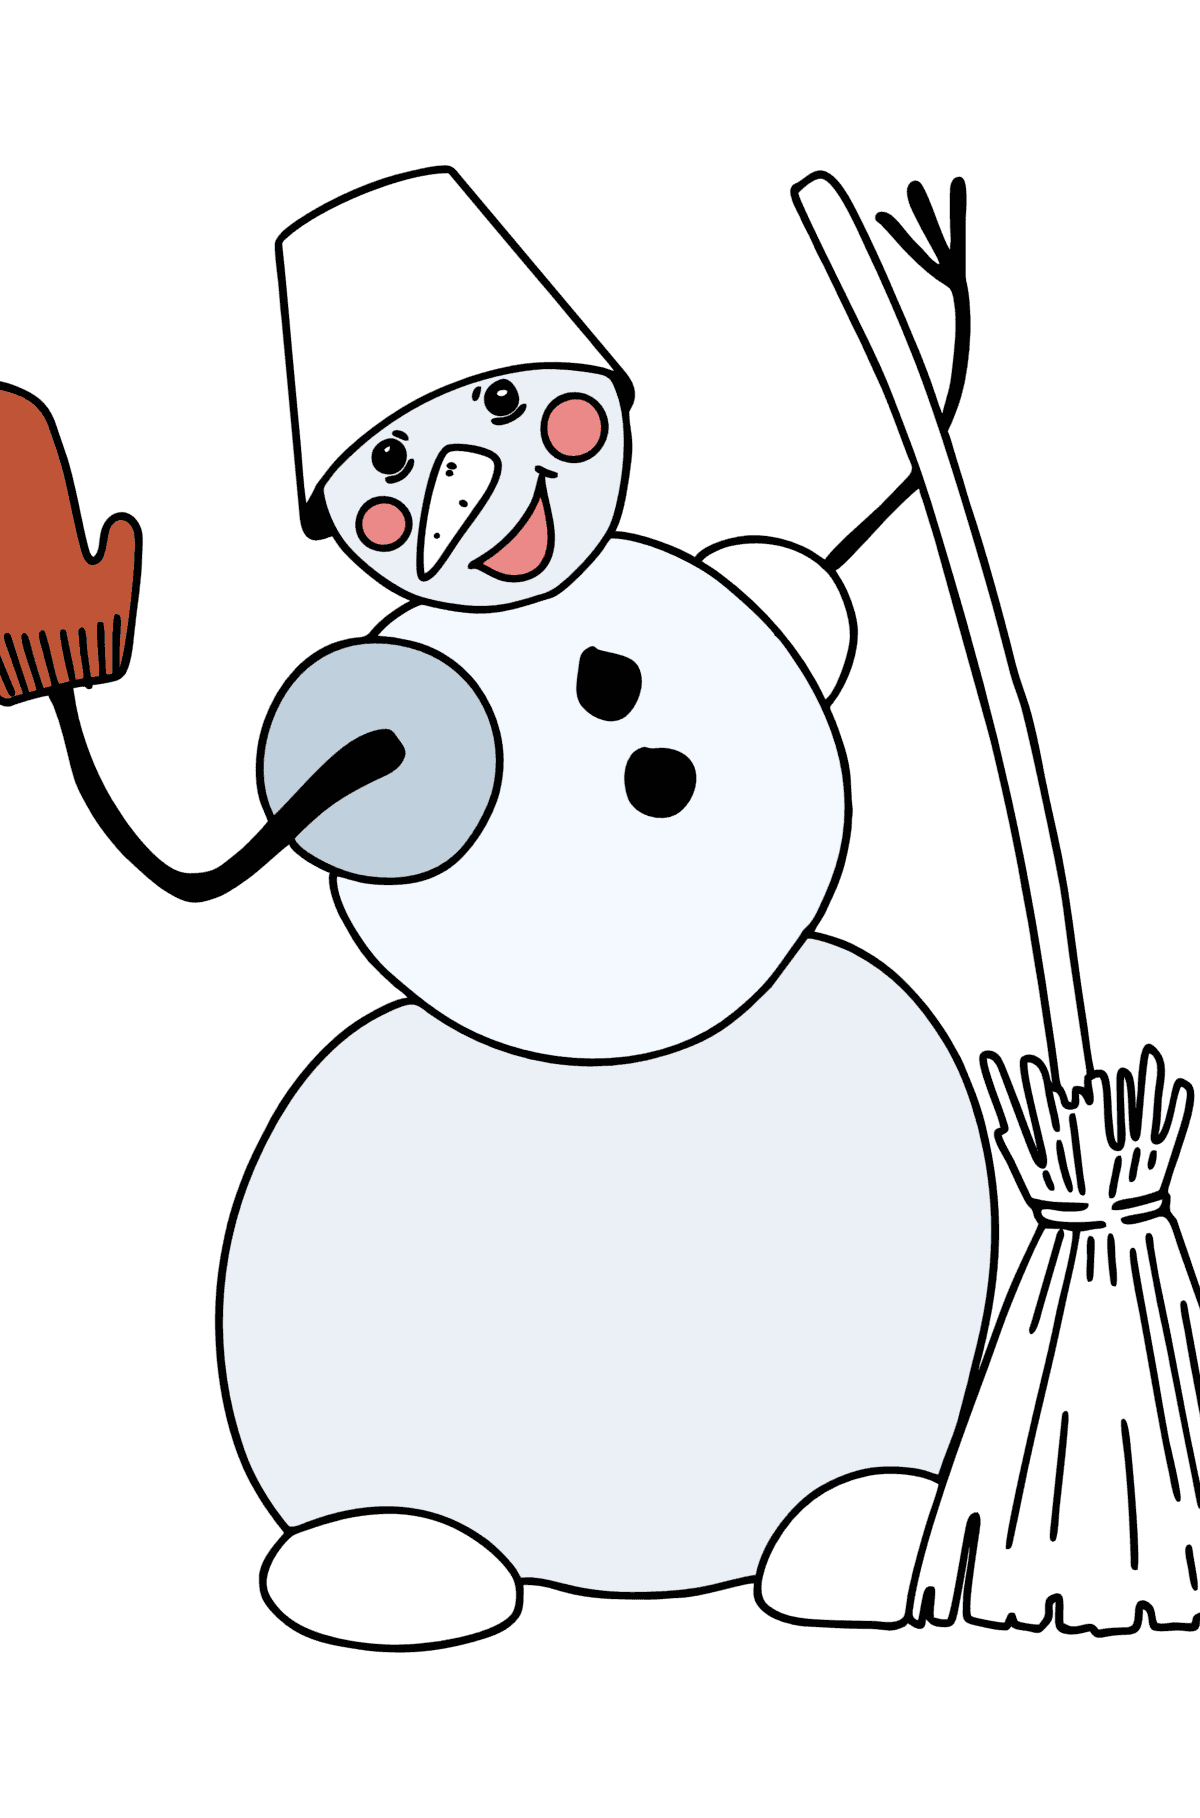 Раскраска Снеговик с метлой - Картинки для Детей